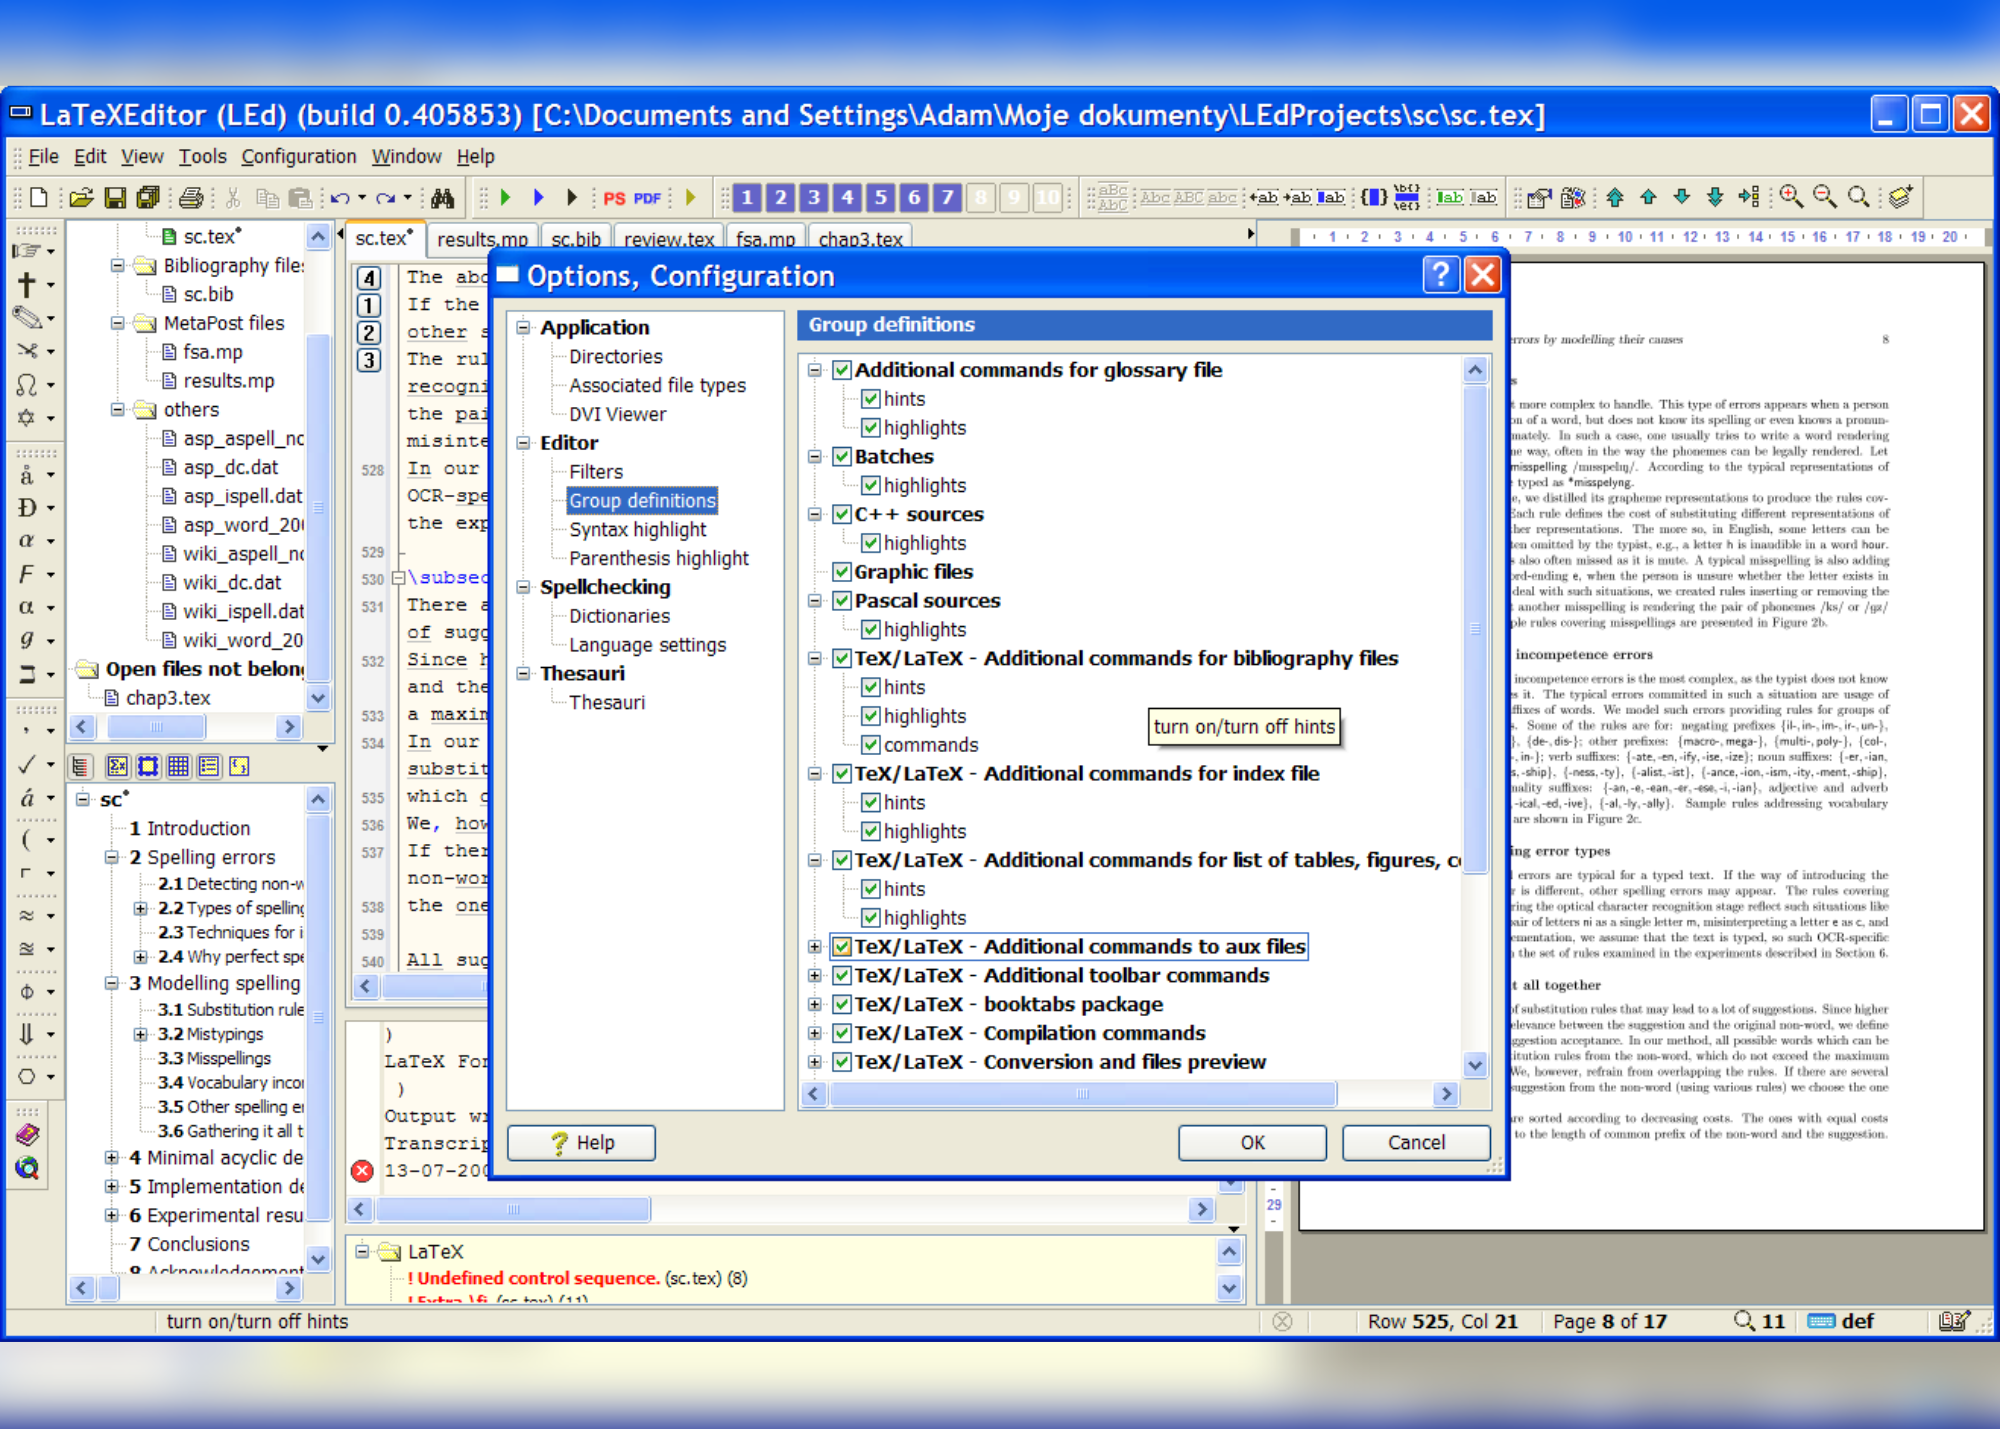 A screenshot showing syntax highlight part 2